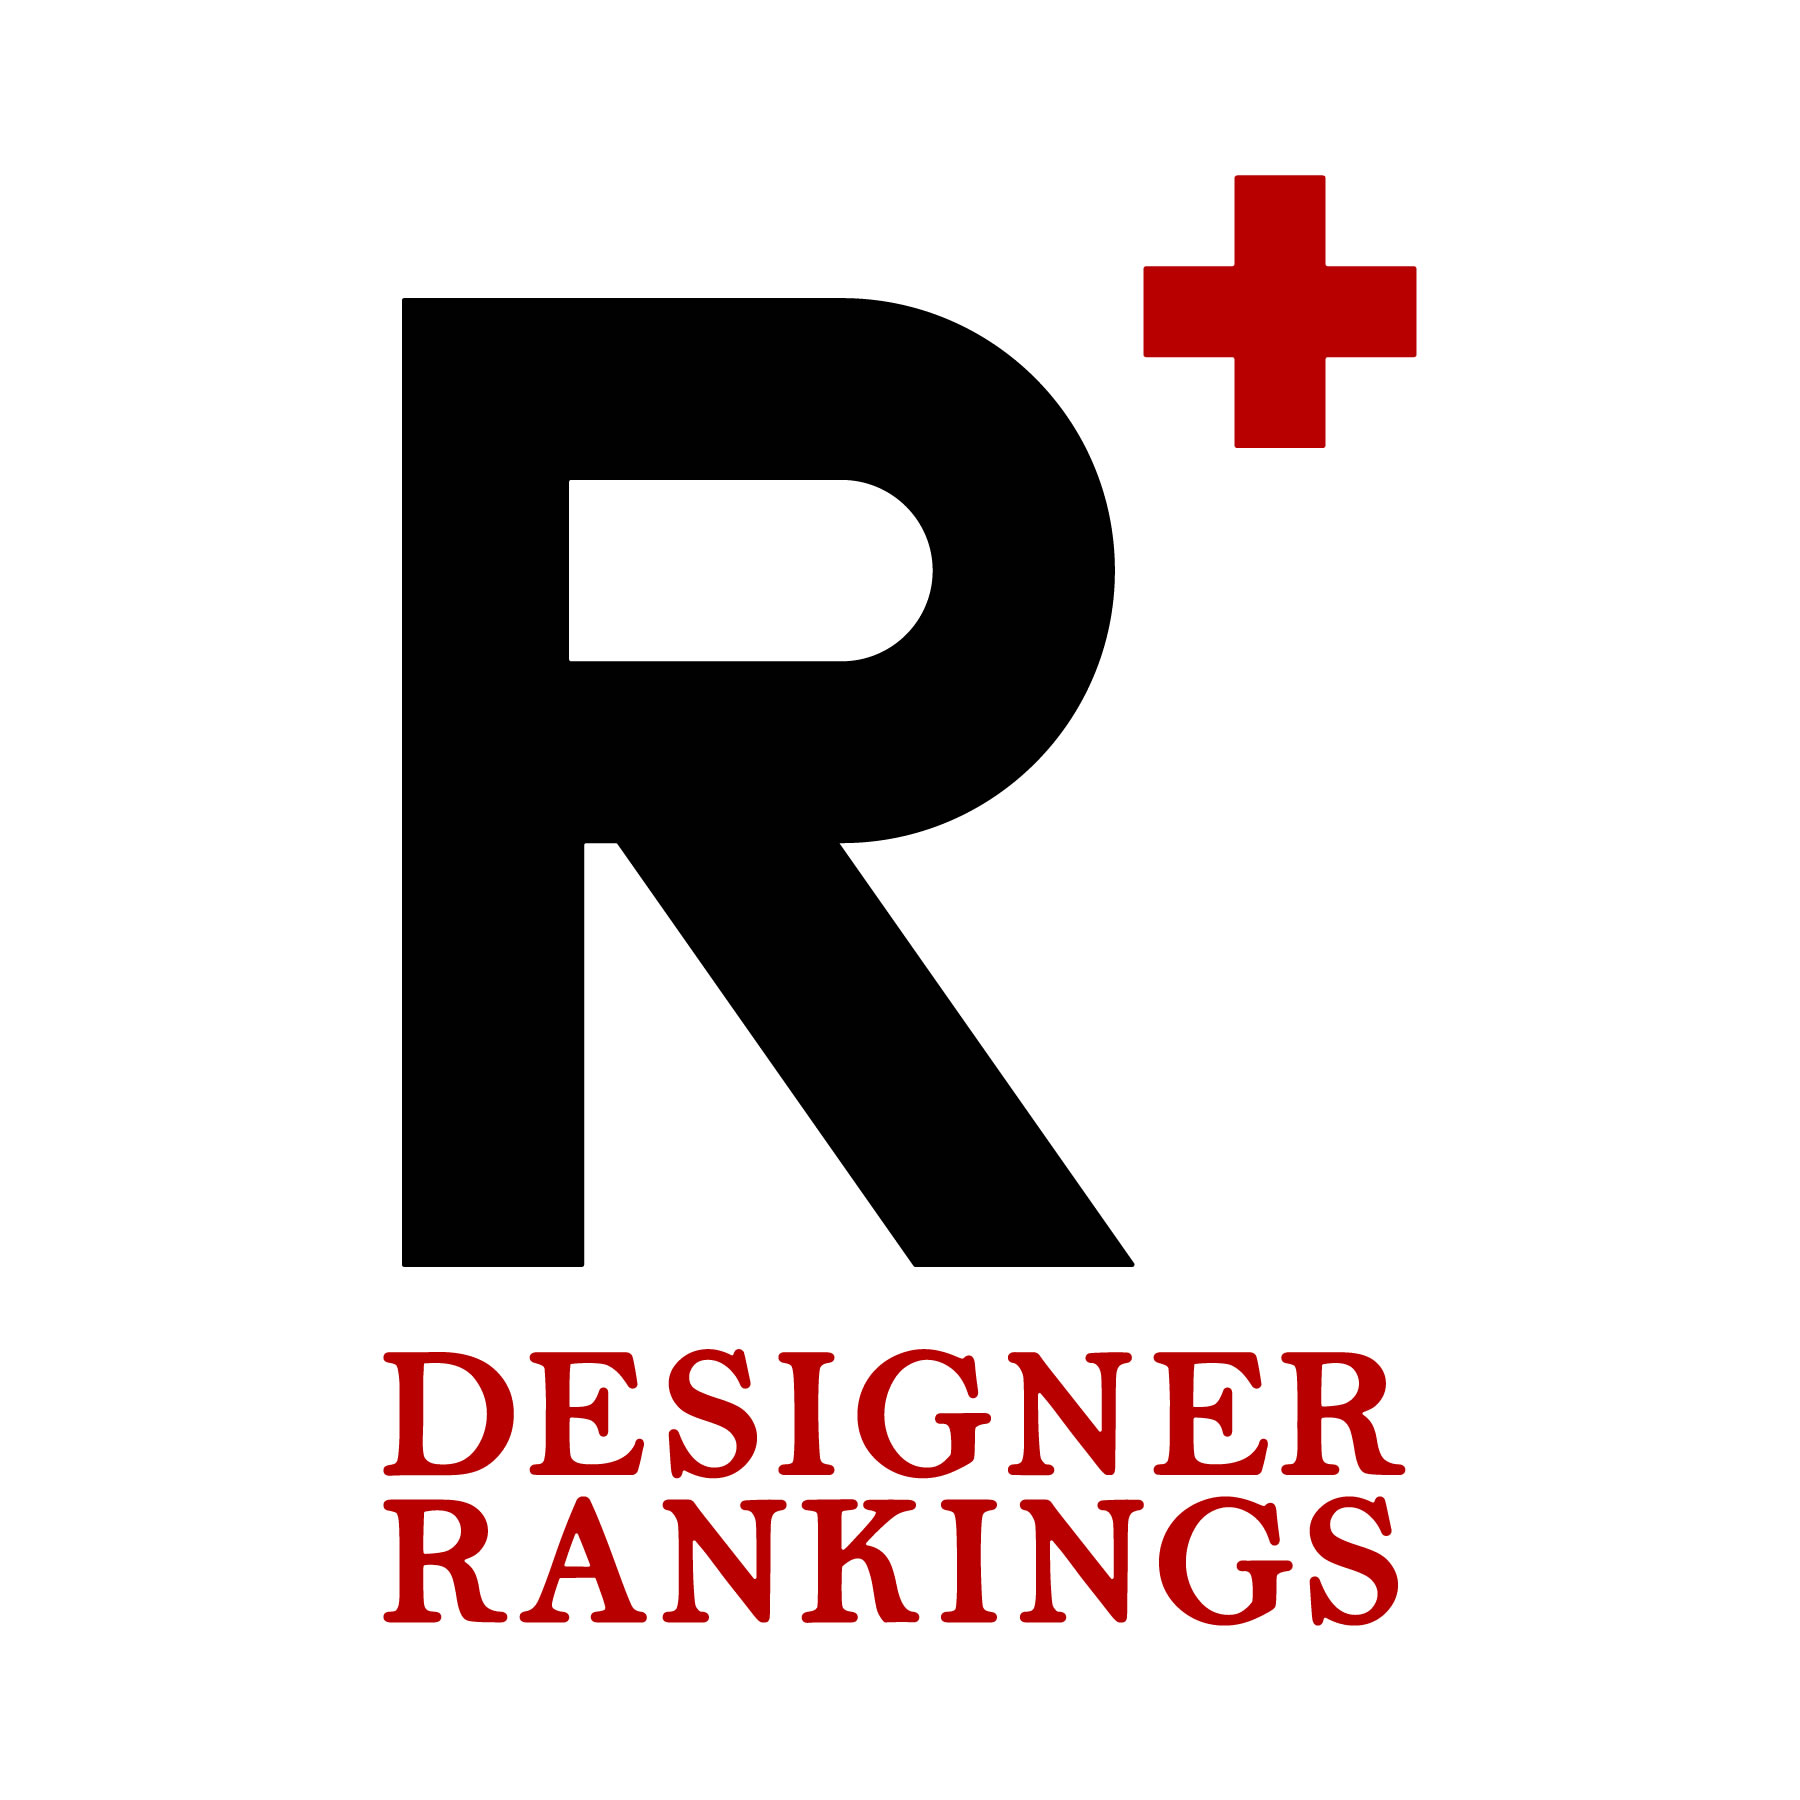 logo of the Designer Rankings